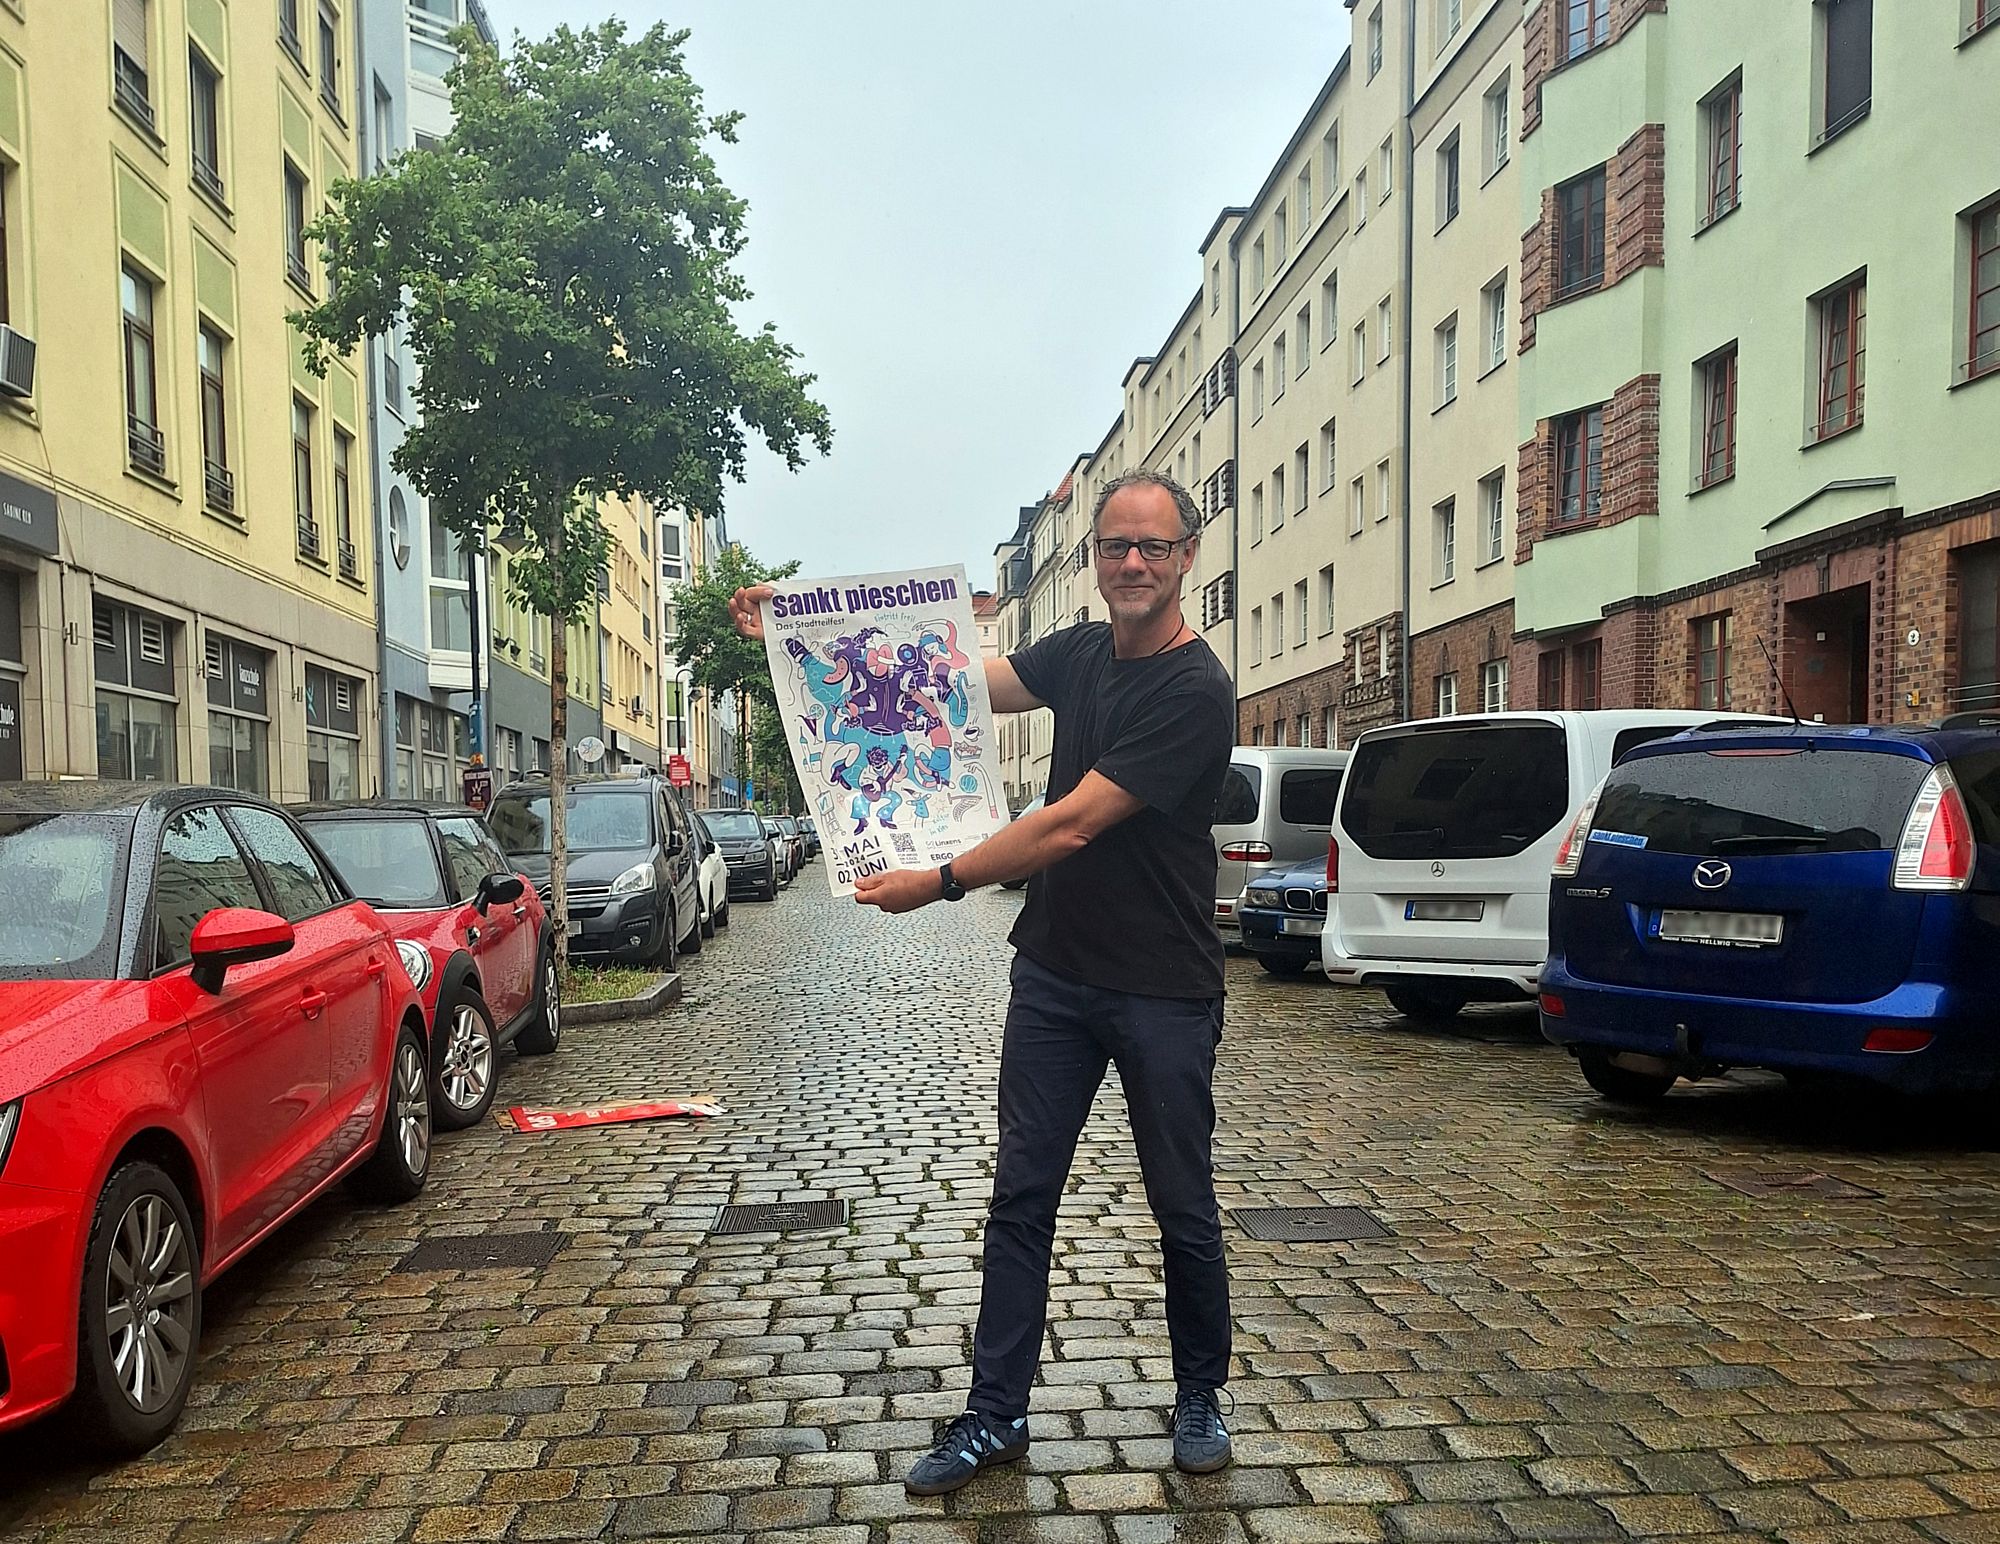 Roland Rudolf, zweiter Vorsitzender des Sankt-Pieschen-Vereins mit dem Plakat für das diesjährige Fest. Foto: J. Gawlik